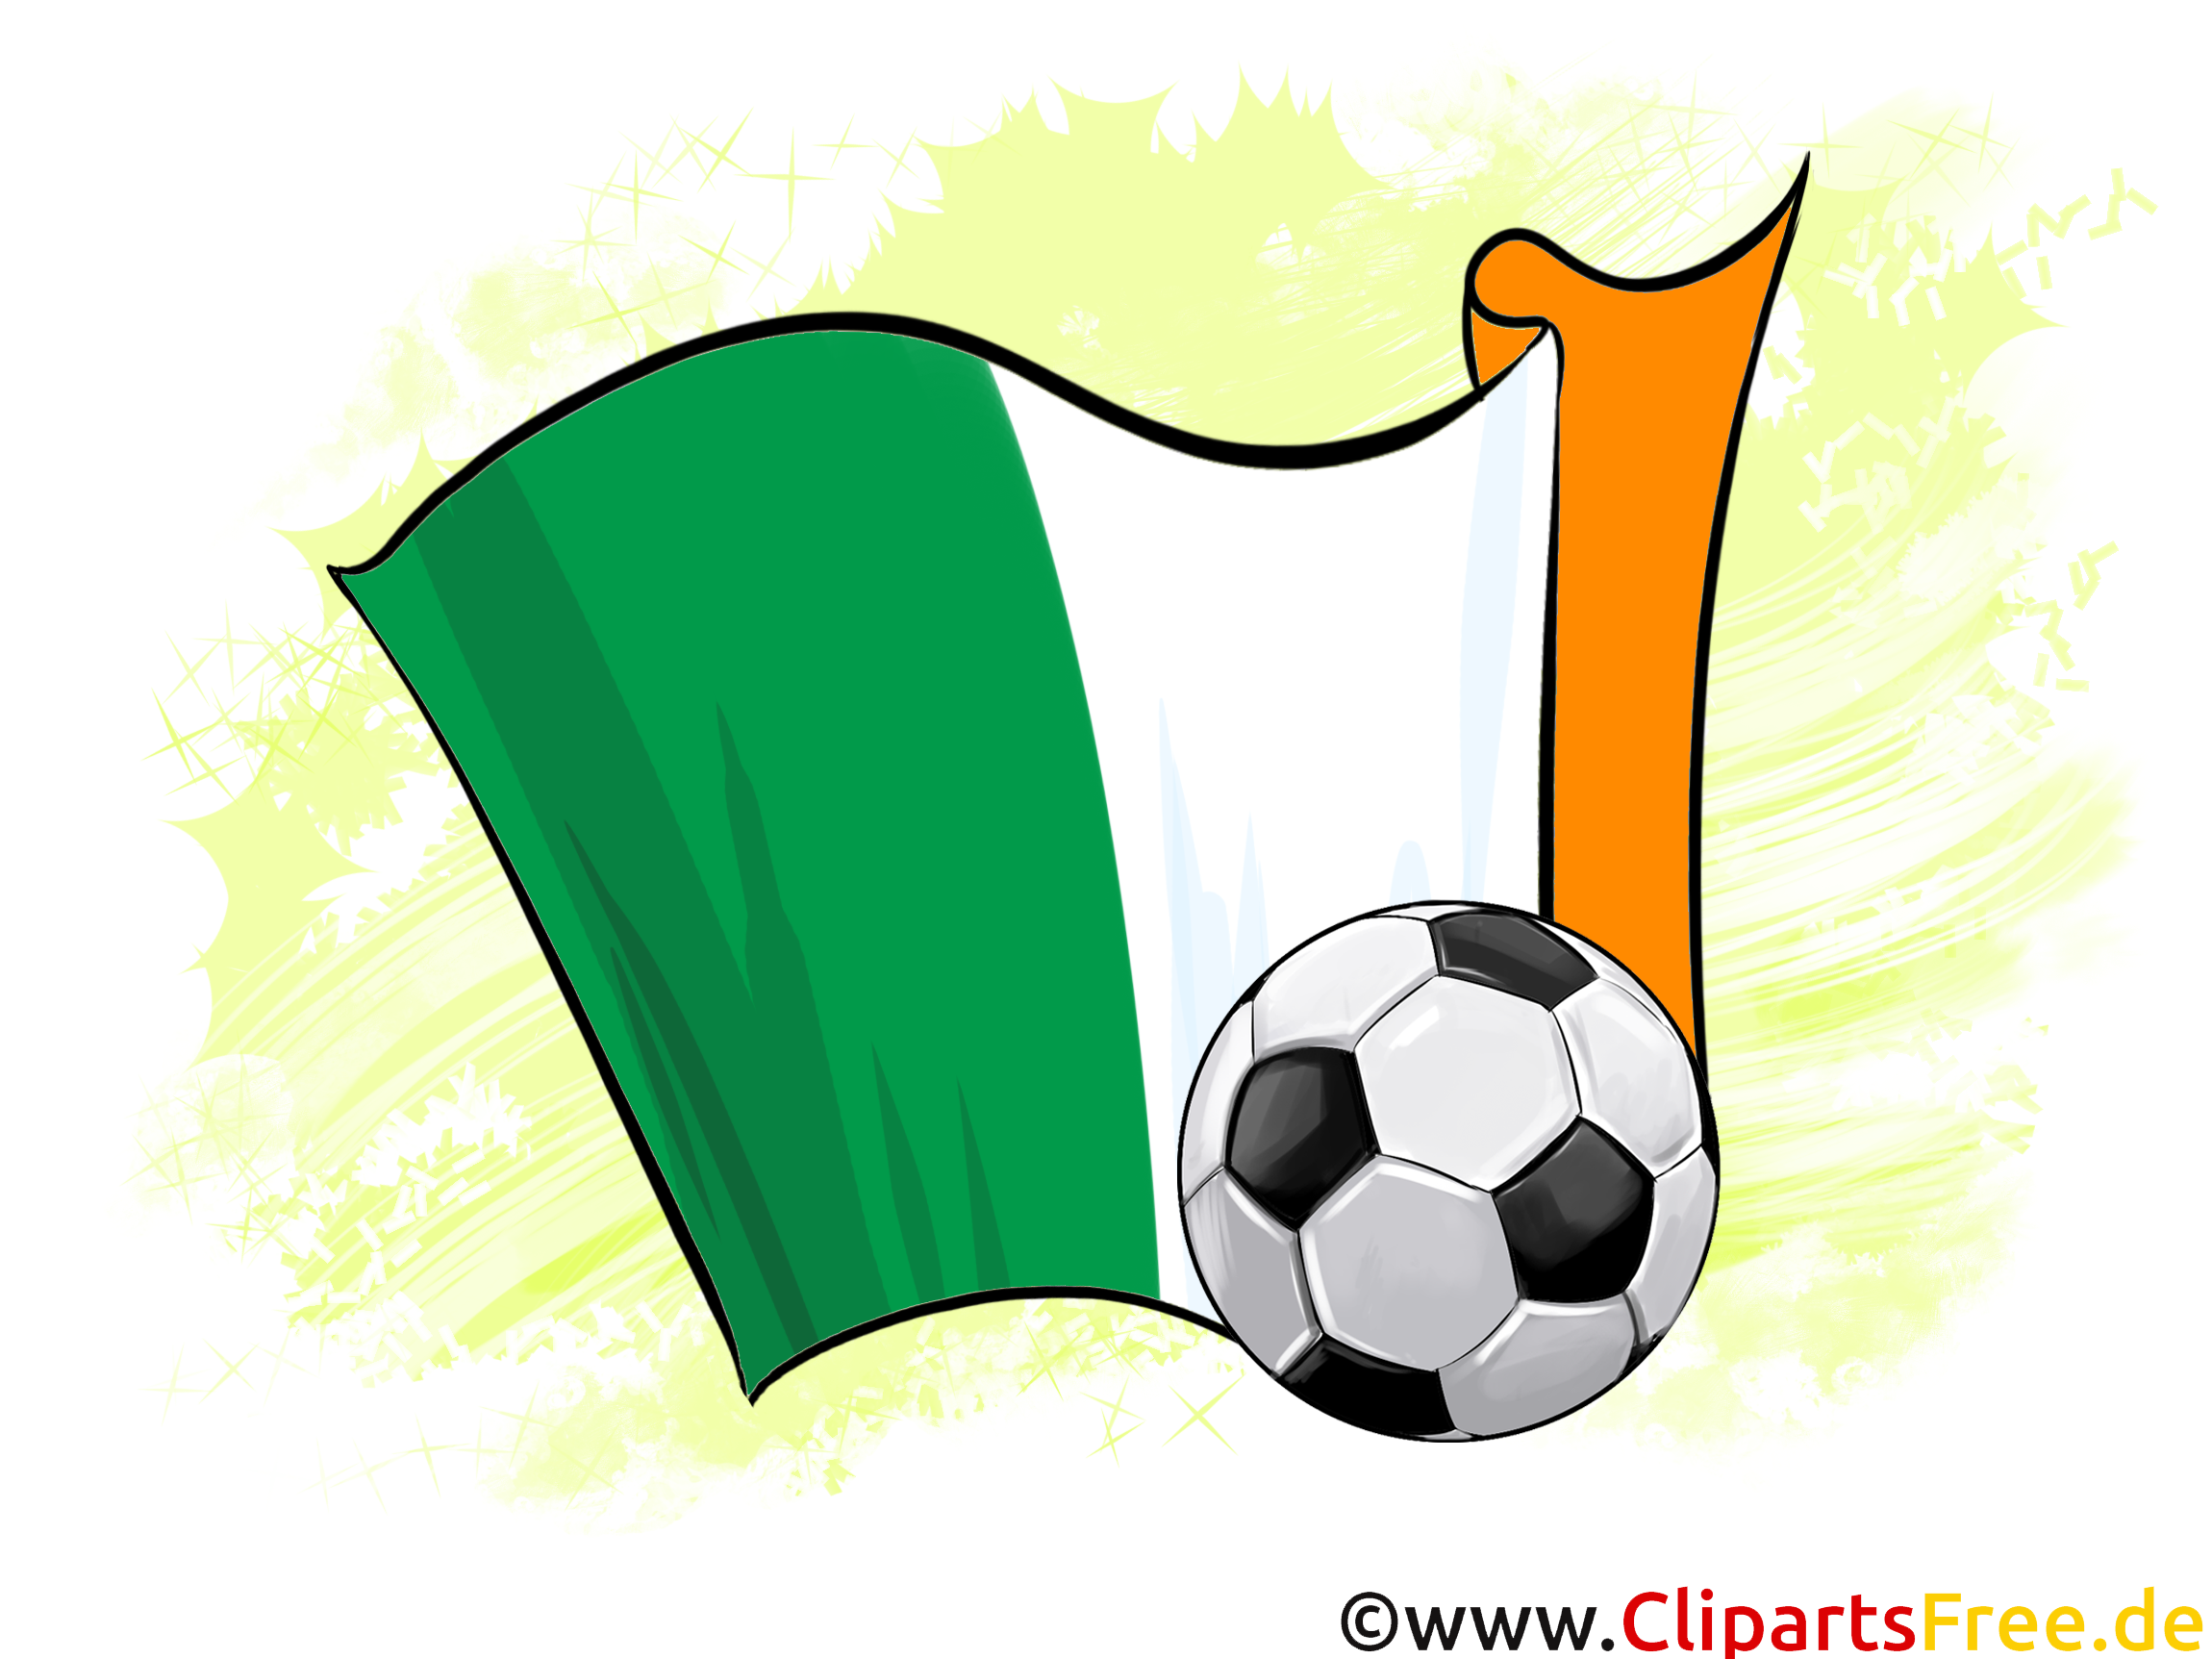 Irelande Drapeau Image Football télécharger gratuitement